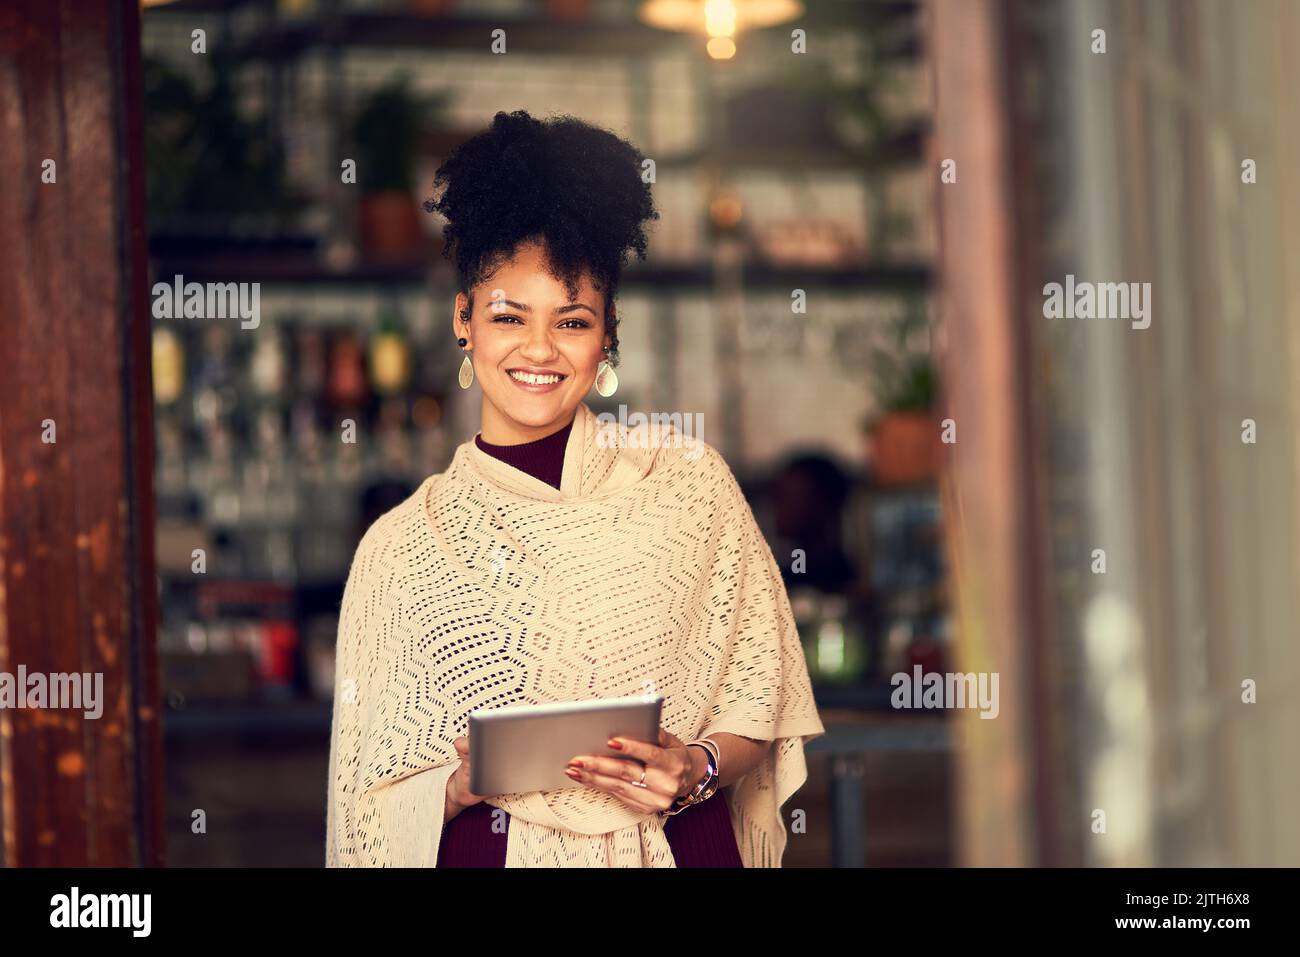 J'adore pouvoir accéder instantanément en ligne où que je me trouve. Portrait d'une jeune femme attrayante utilisant une tablette numérique dans un café. Banque D'Images